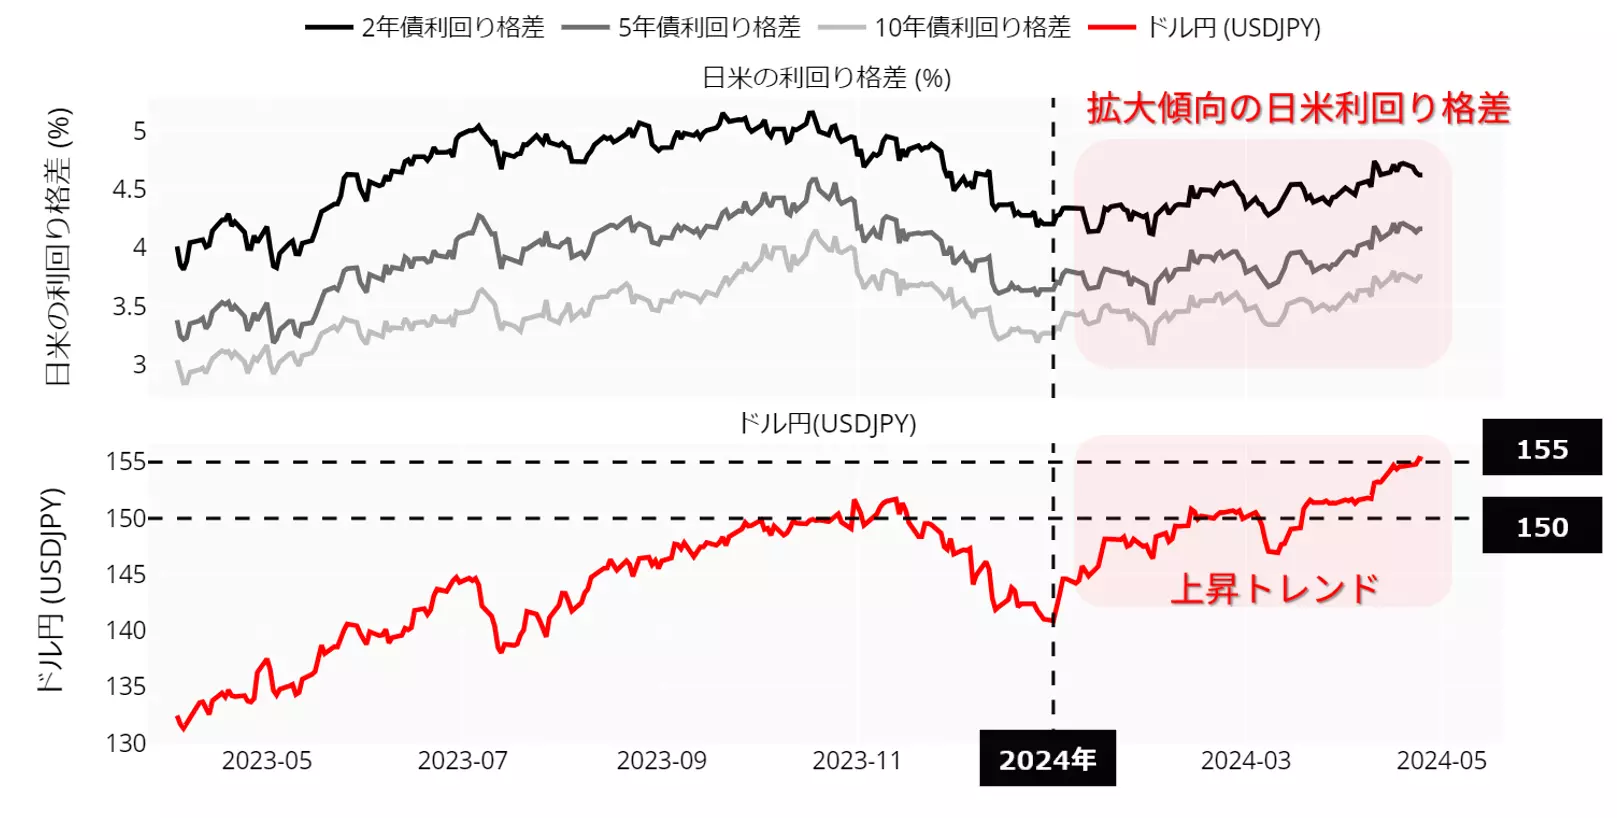 日米利回り格差とドル円の動向：23年4月以降